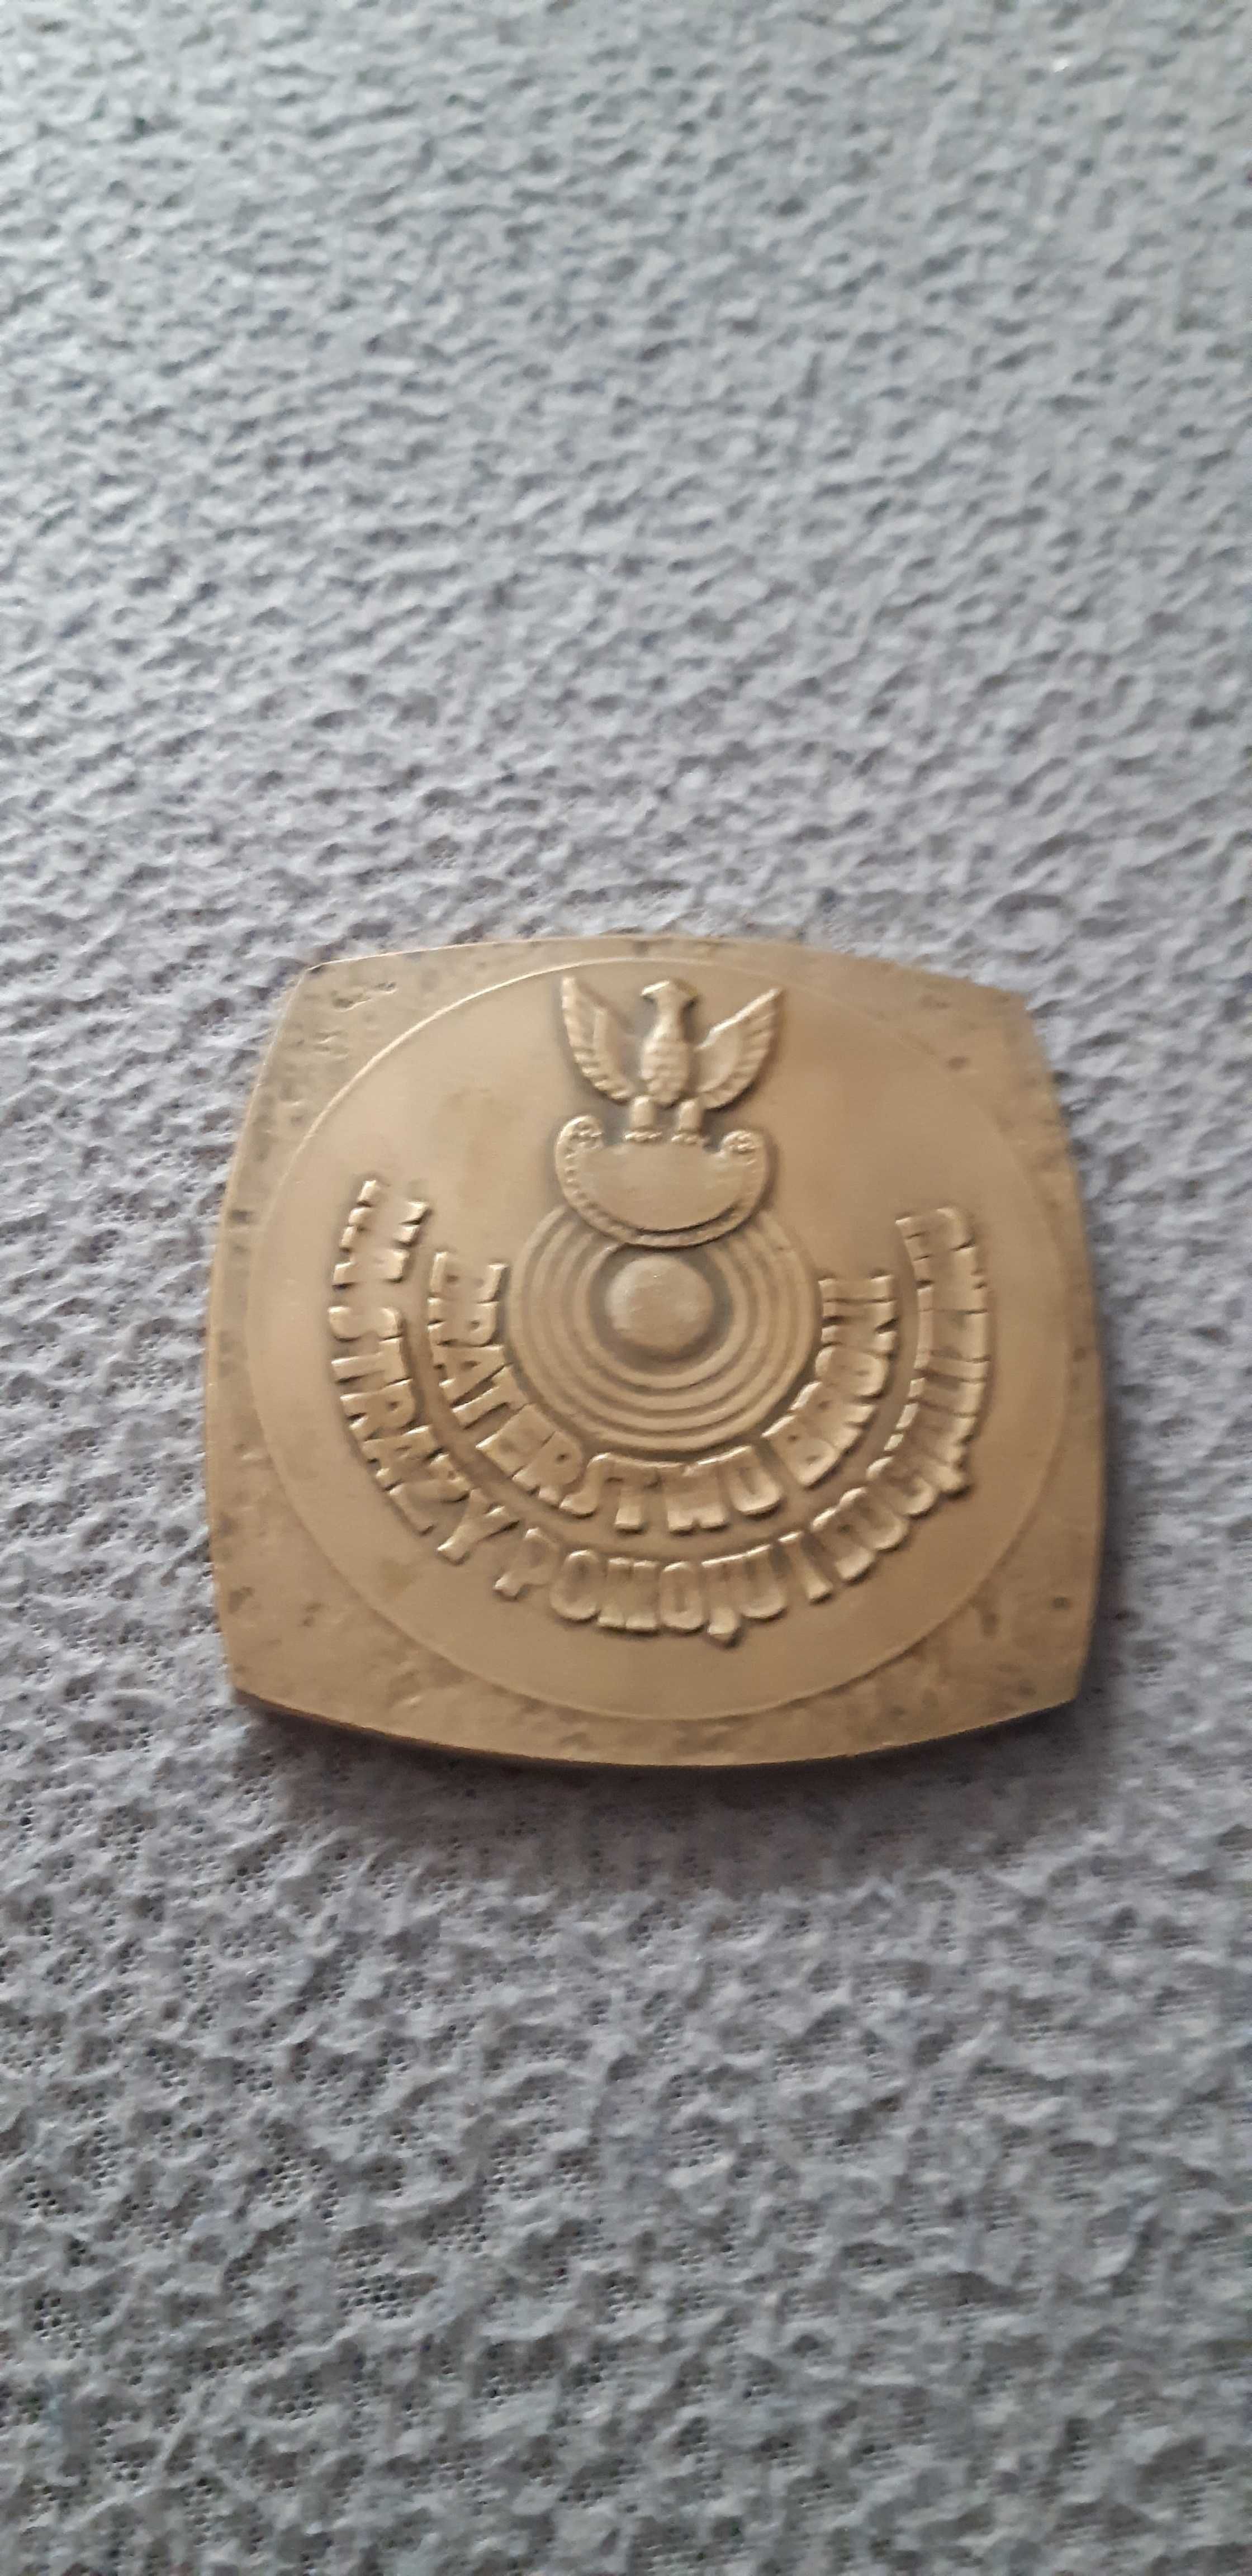 medal braterstwo broni na straży pokoju i socjalizmu 7cm x 7 cm